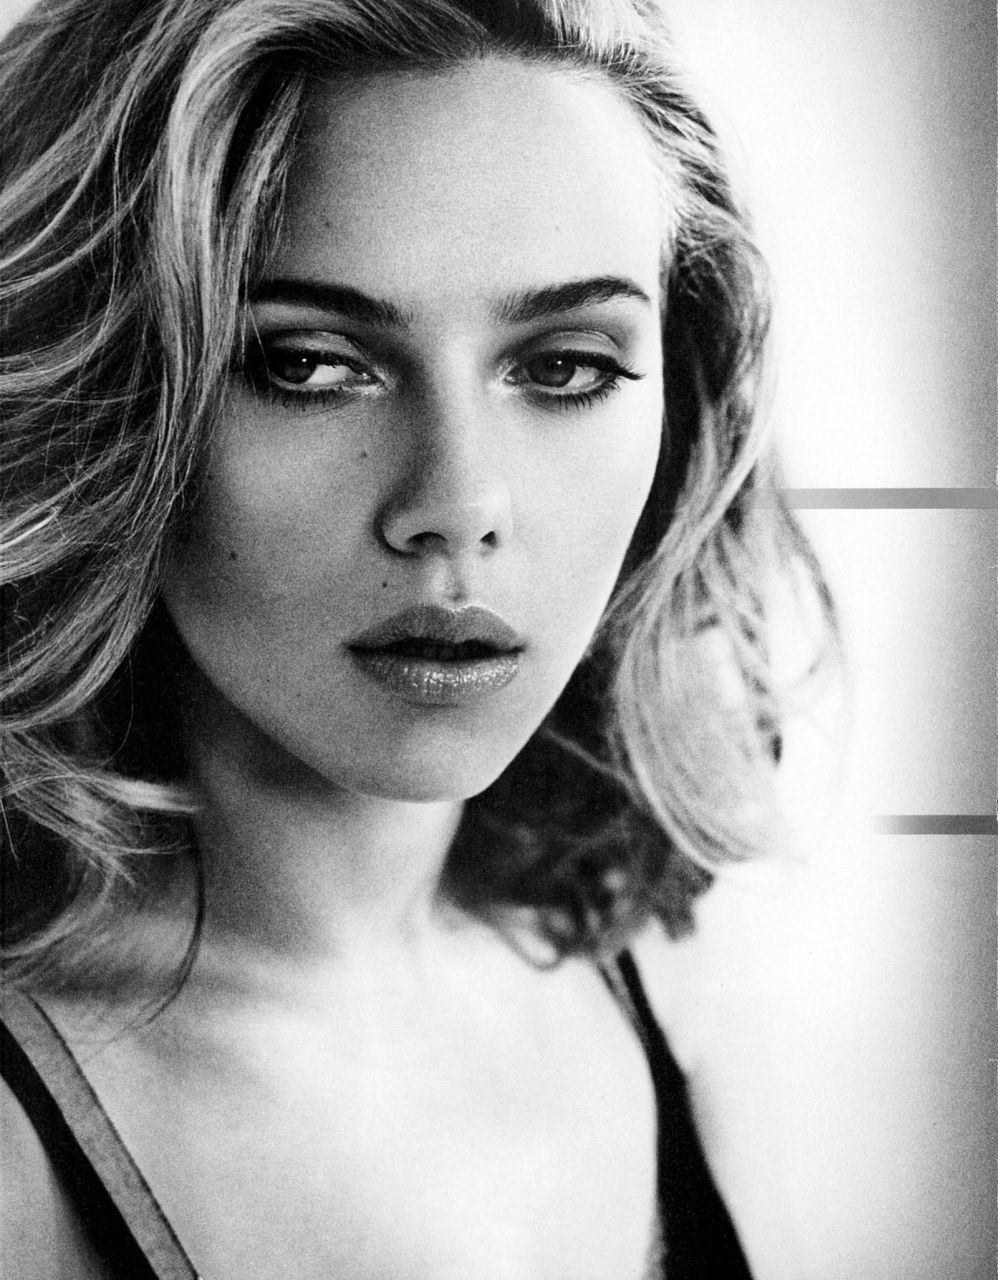 Esquire uznał Scarlett Johansson za najpiękniejszą kobietę świata